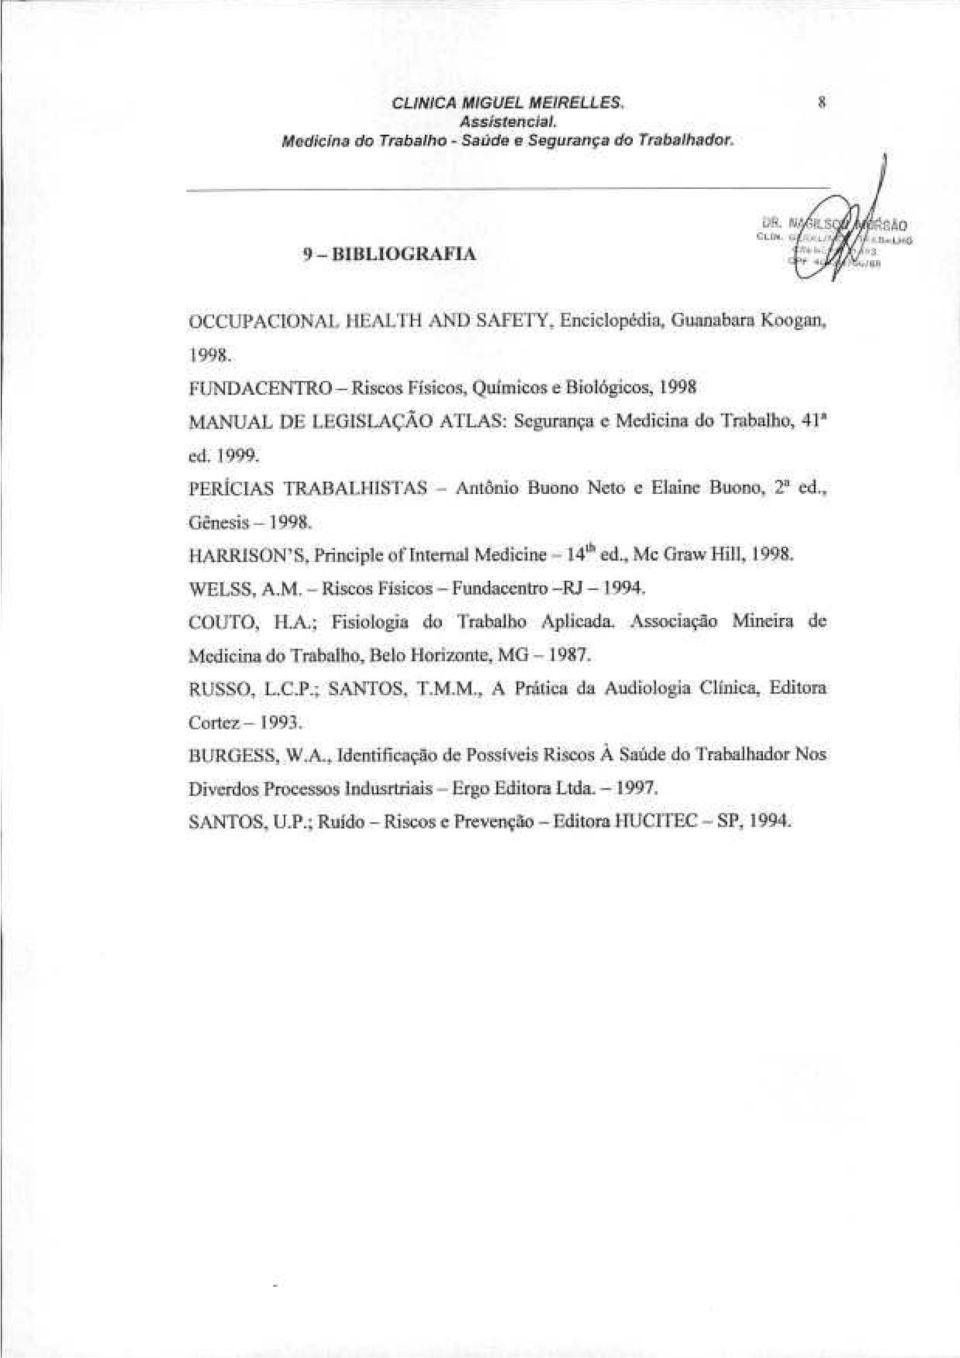 , Gênesis - 1998. HARRISON'S, Principie of Internai Medicine - 14'" ed., Me Graw llill, 1998. WELSS, A.M.- Riscos Físicos - Fundaccntro-RJ - 1994. COUTO, II.A.; Fisiologia do Trabalho Aplicada.